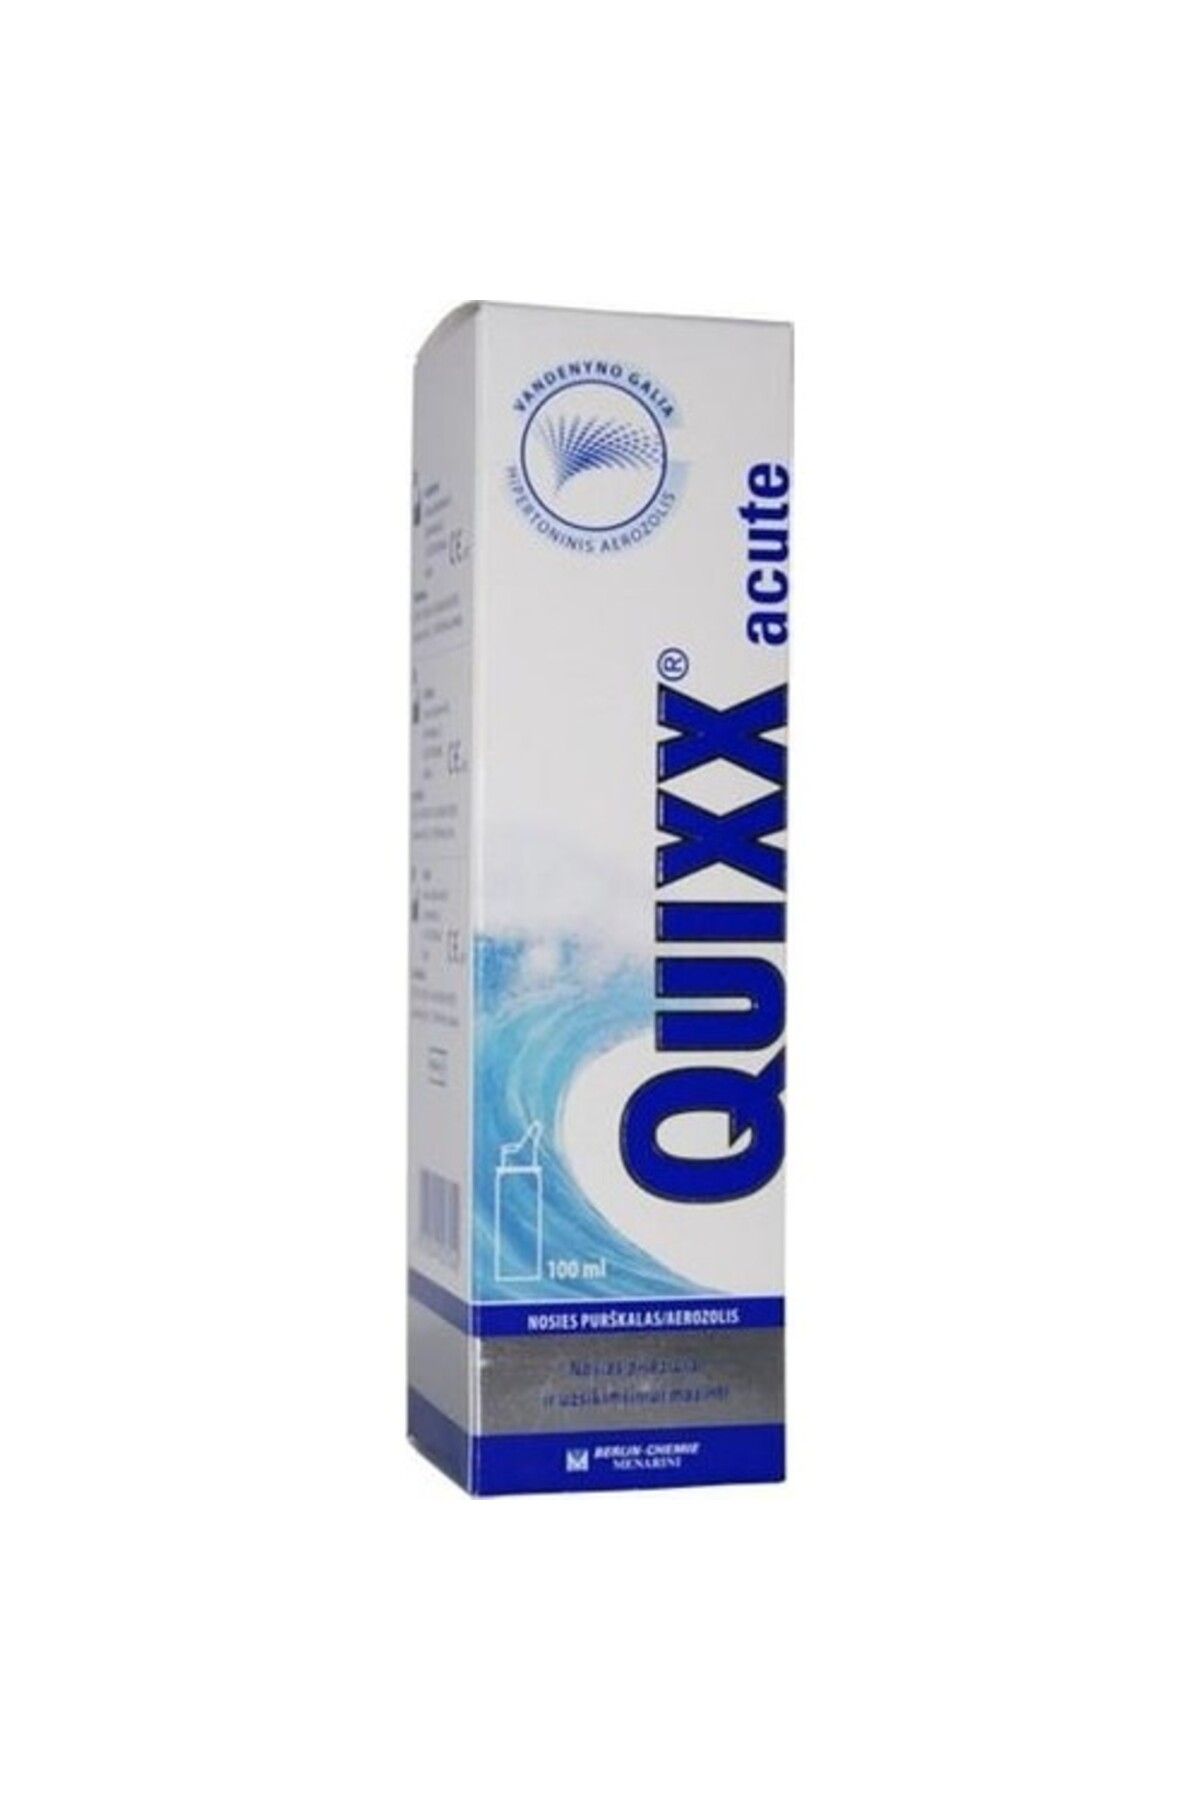 QUIXX Acute 100 ml